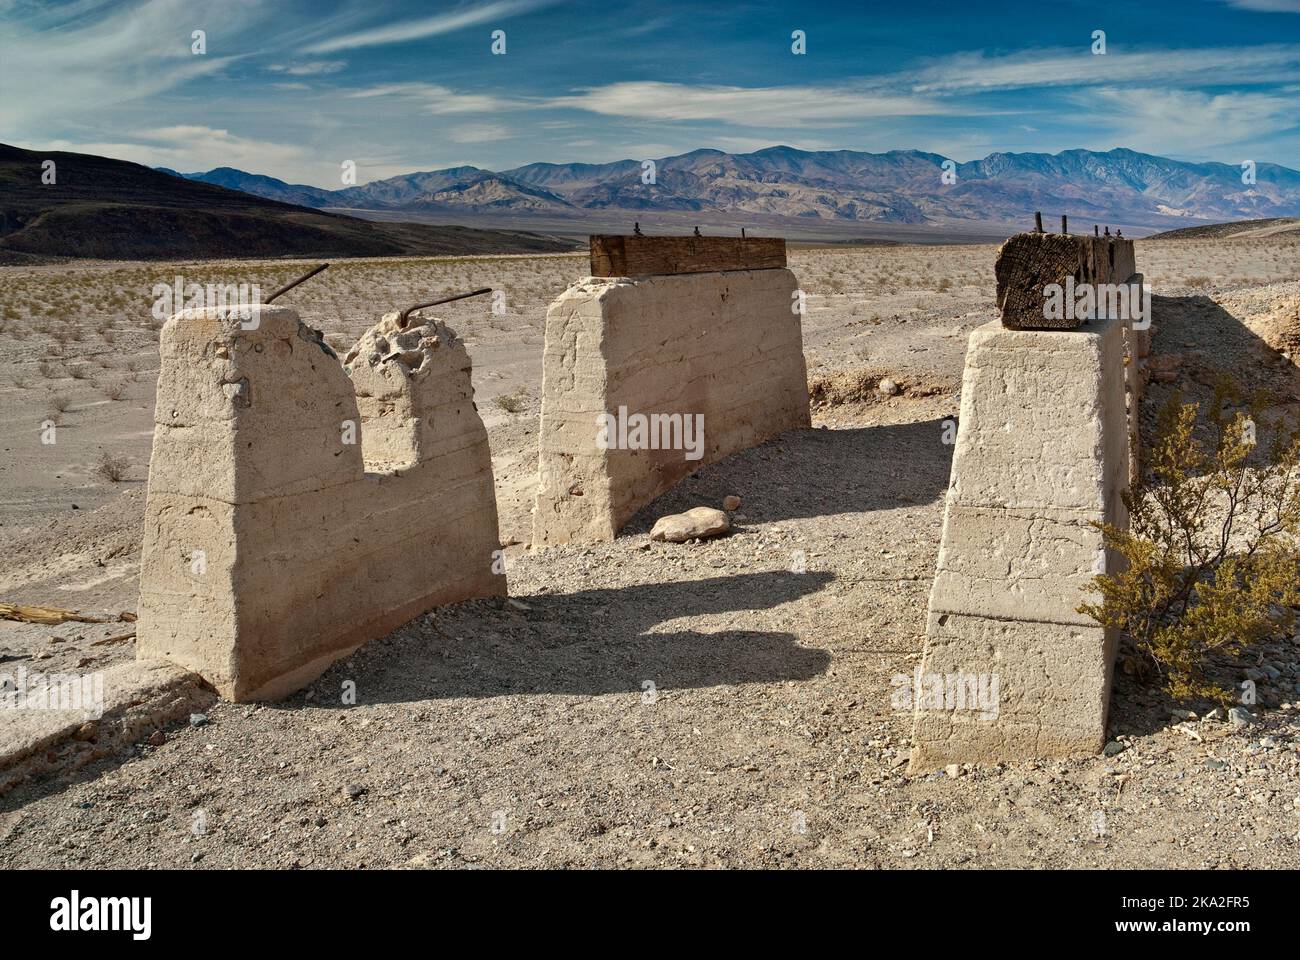 Ashford Mill Ruinen mit Panamint Range in Ferne, Mojave-Wüste, Death Valley Nationalpark, Kalifornien, USA Stockfoto